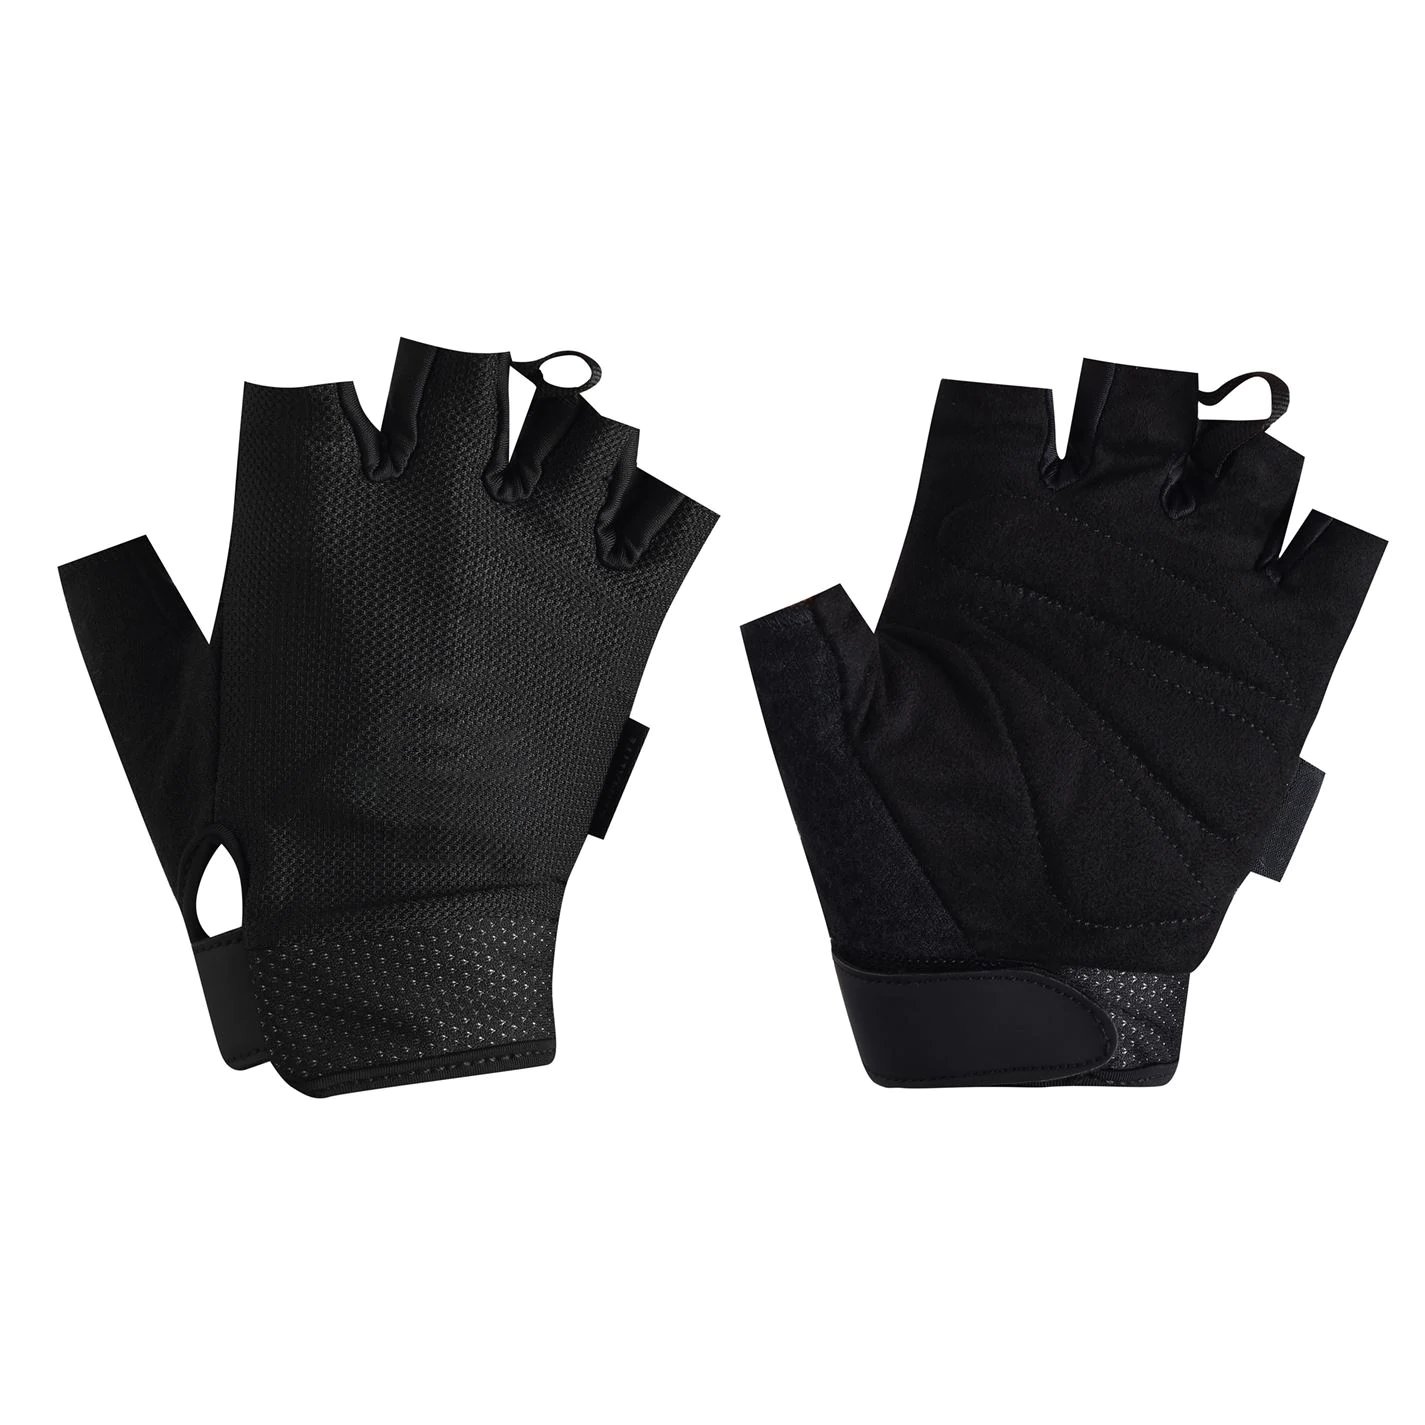 Fingerless lightweight anti-slip weight lifting gloves